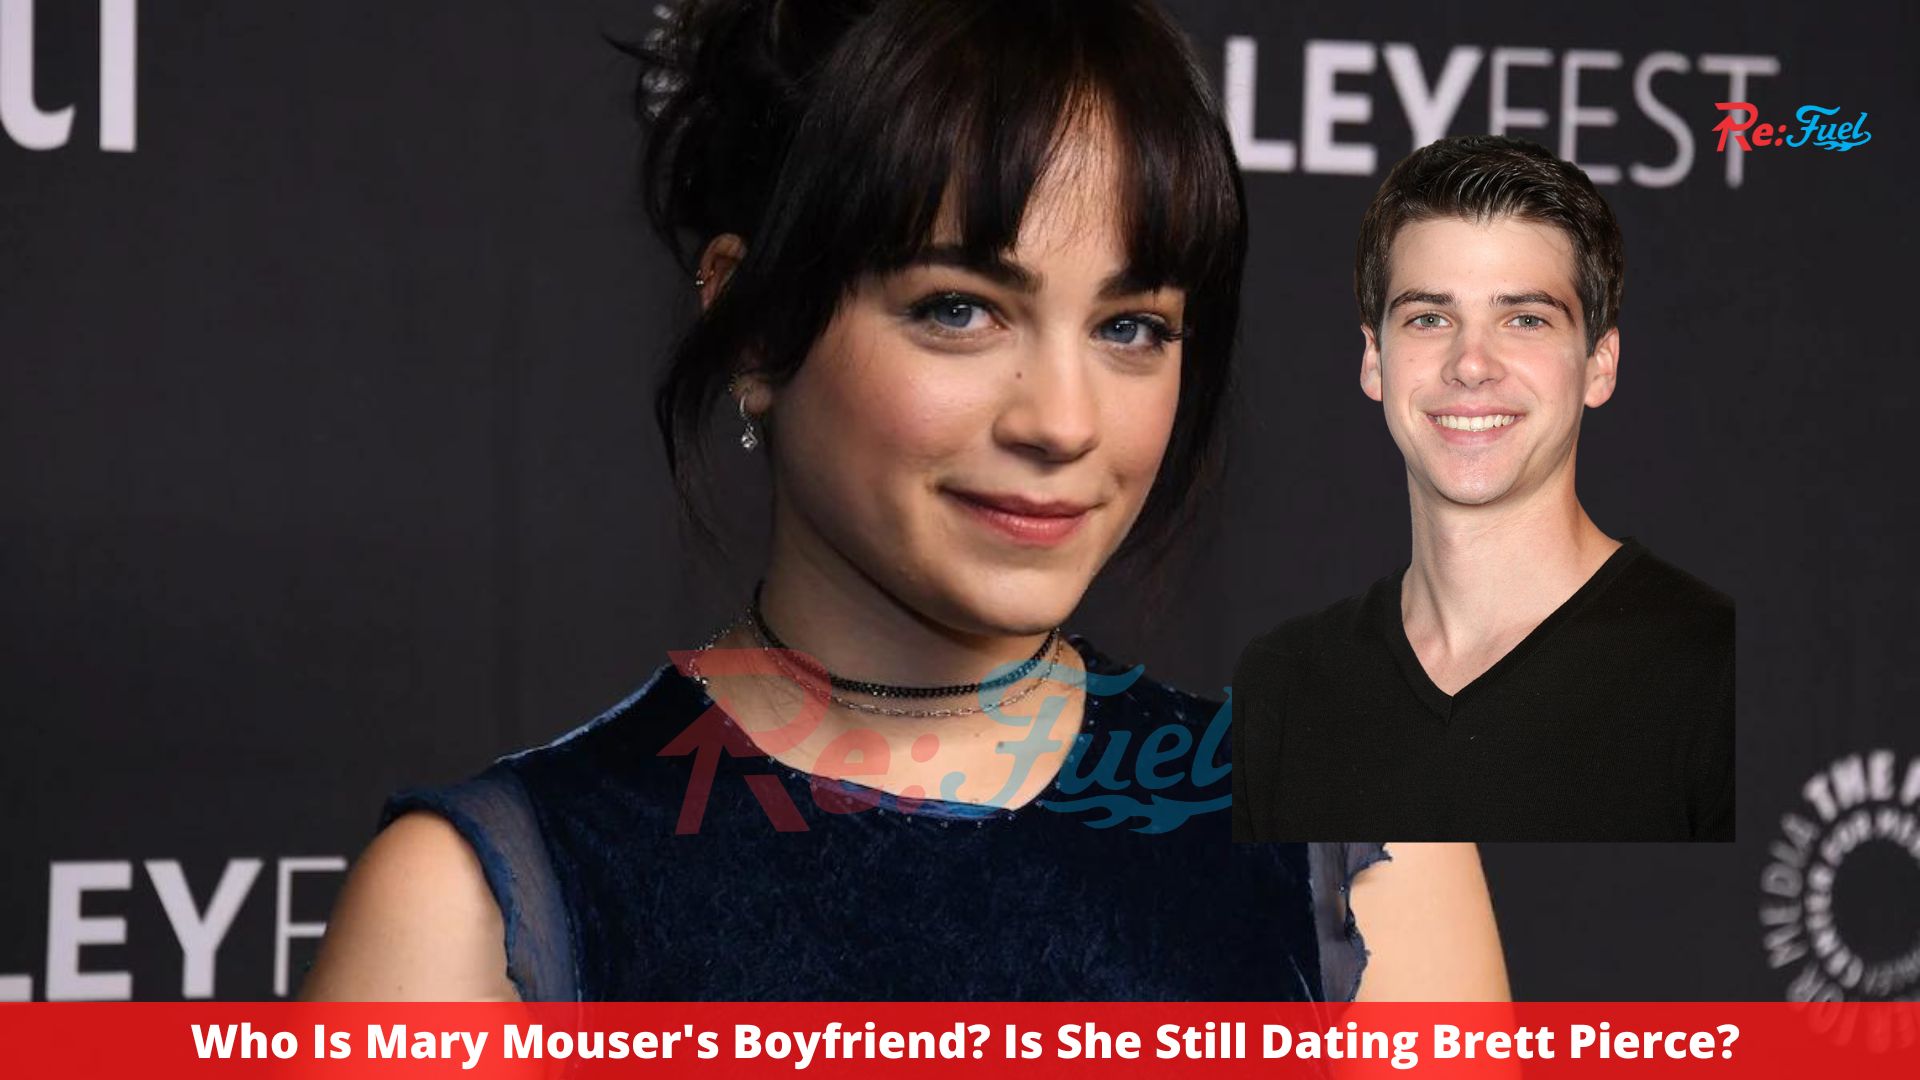 Who Is Mary Mouser's Boyfriend? Is She Still Dating Brett Pierce?